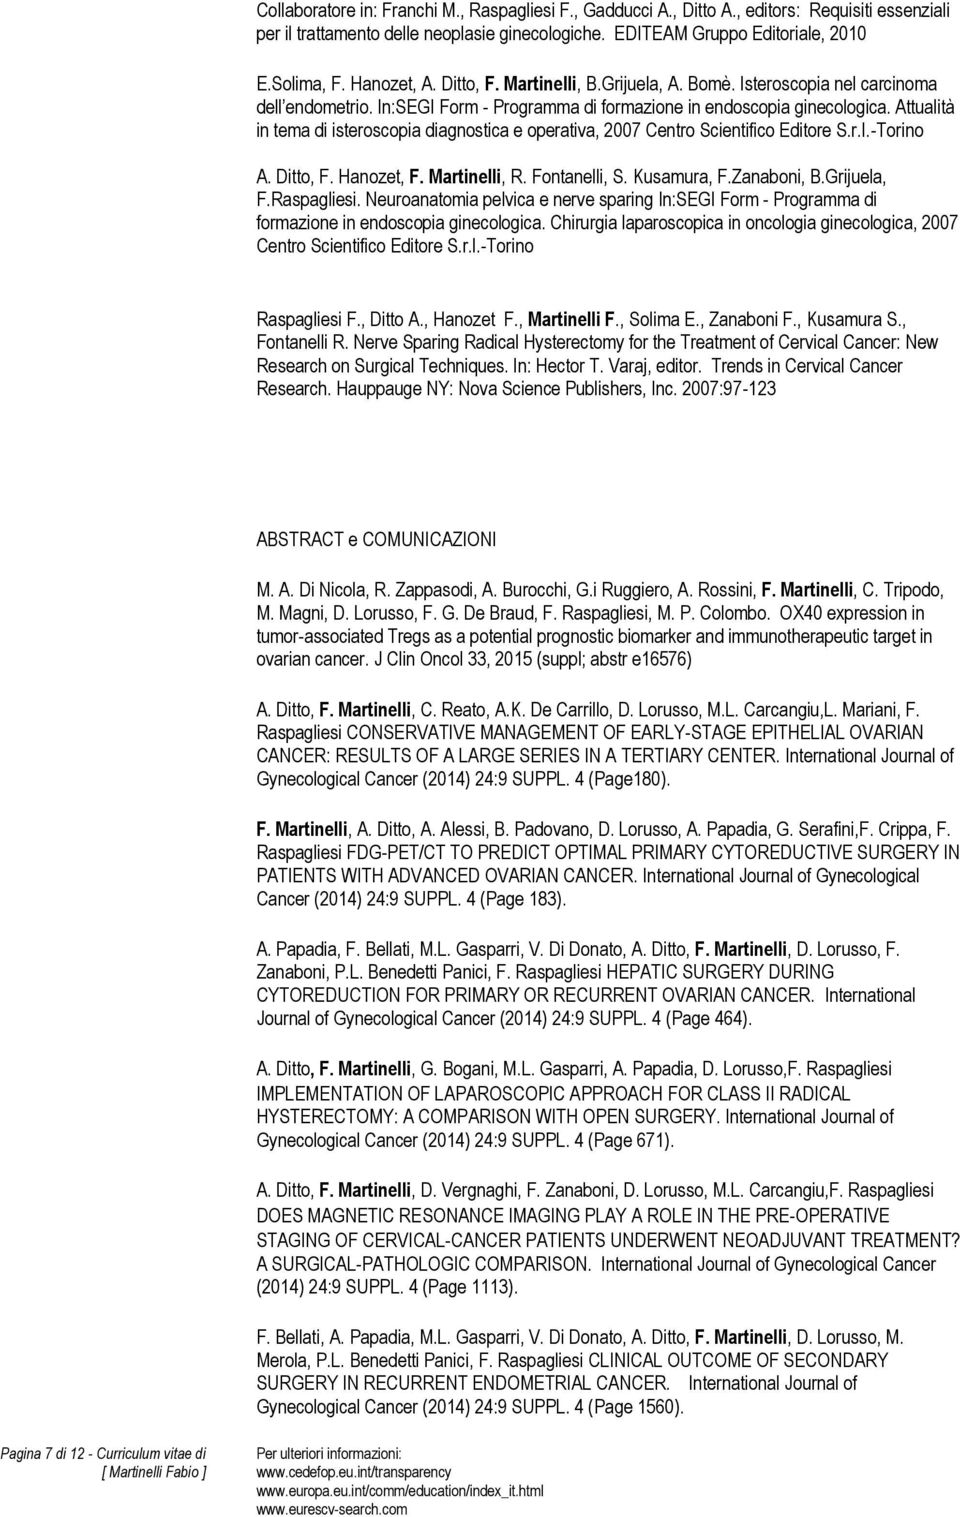 Attualità in tema di isteroscopia diagnostica e operativa, 2007 Centro Scientifico Editore S.r.l.-Torino A. Ditto, F. Hanozet, F. Martinelli, R. Fontanelli, S. Kusamura, F.Zanaboni, B.Grijuela, F.